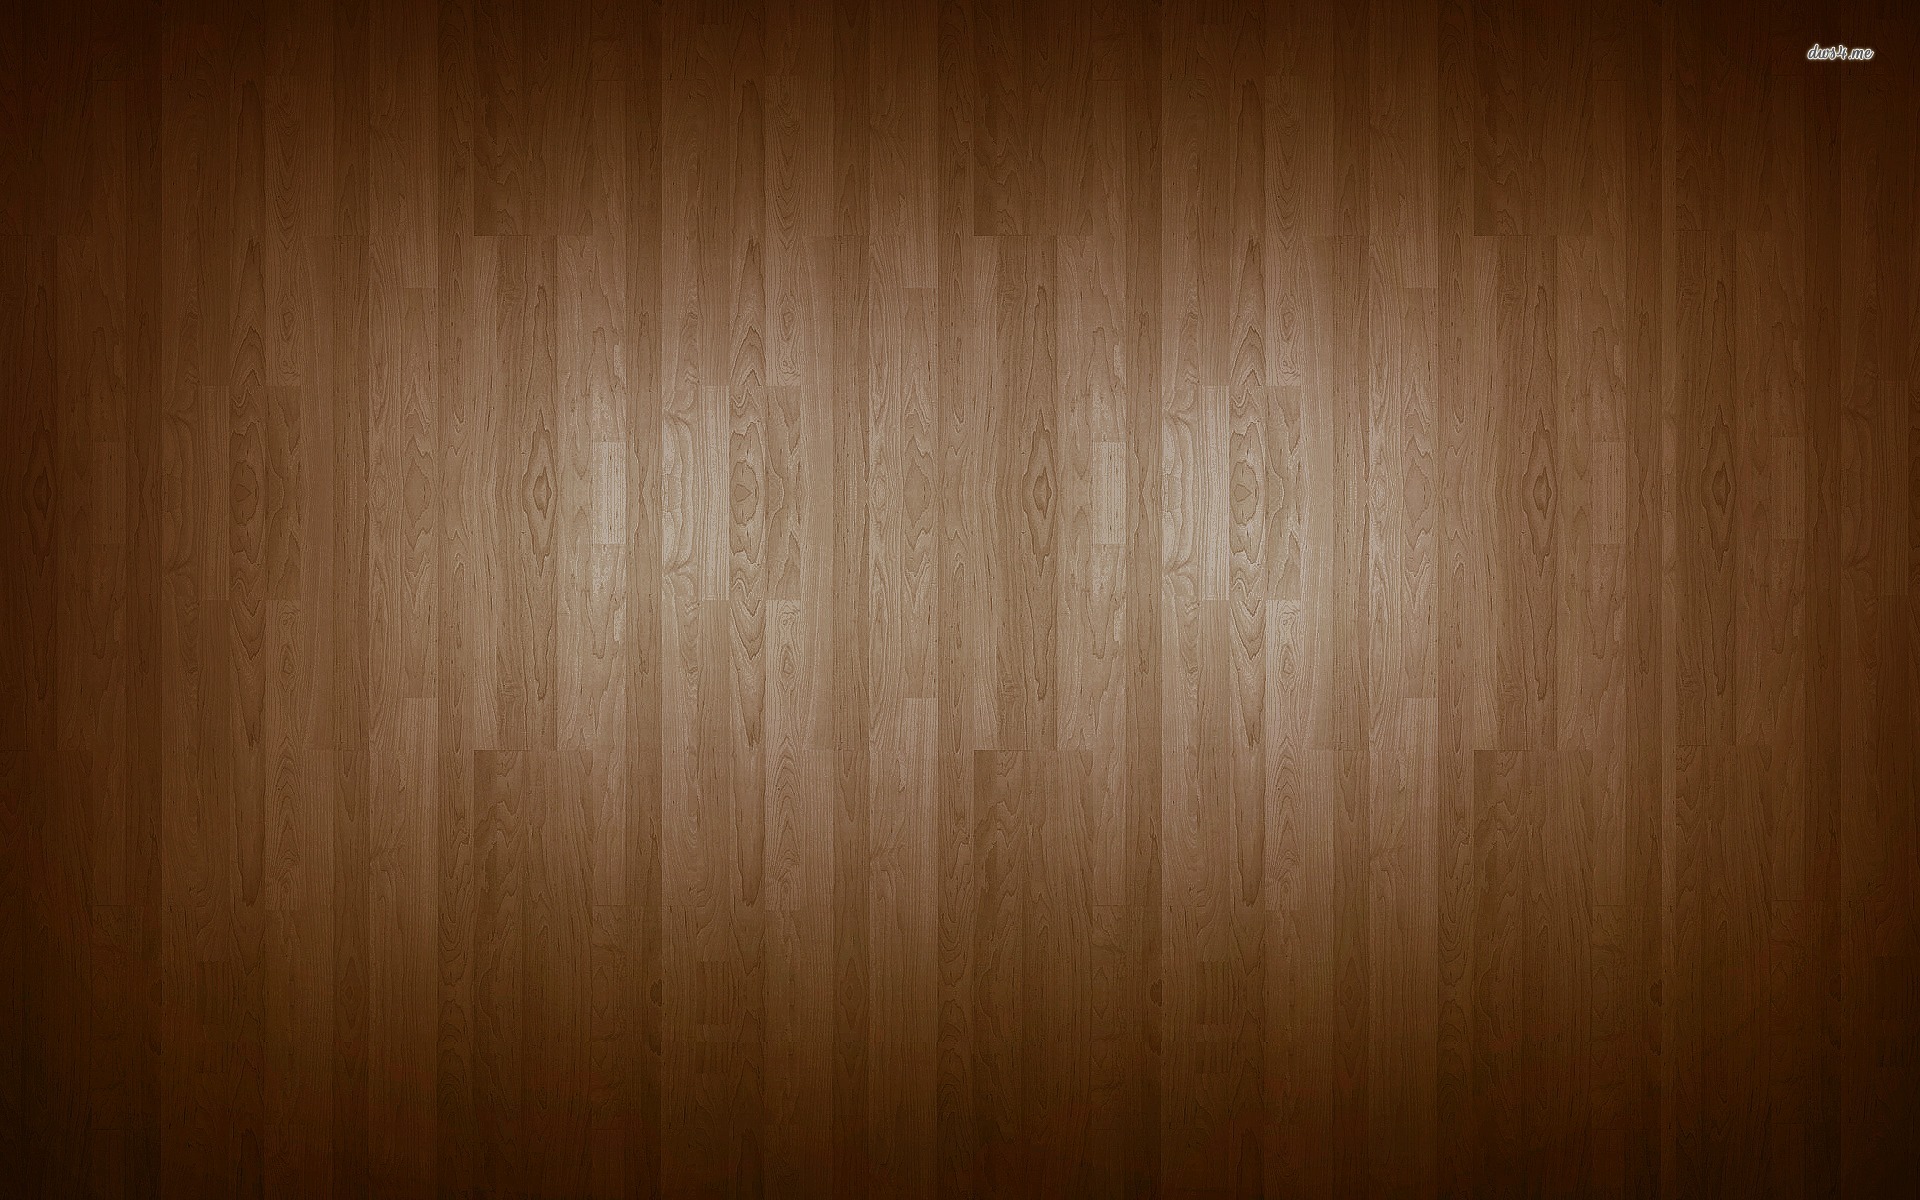 Wooden Floor wallpaper - Abstract wallpapers -